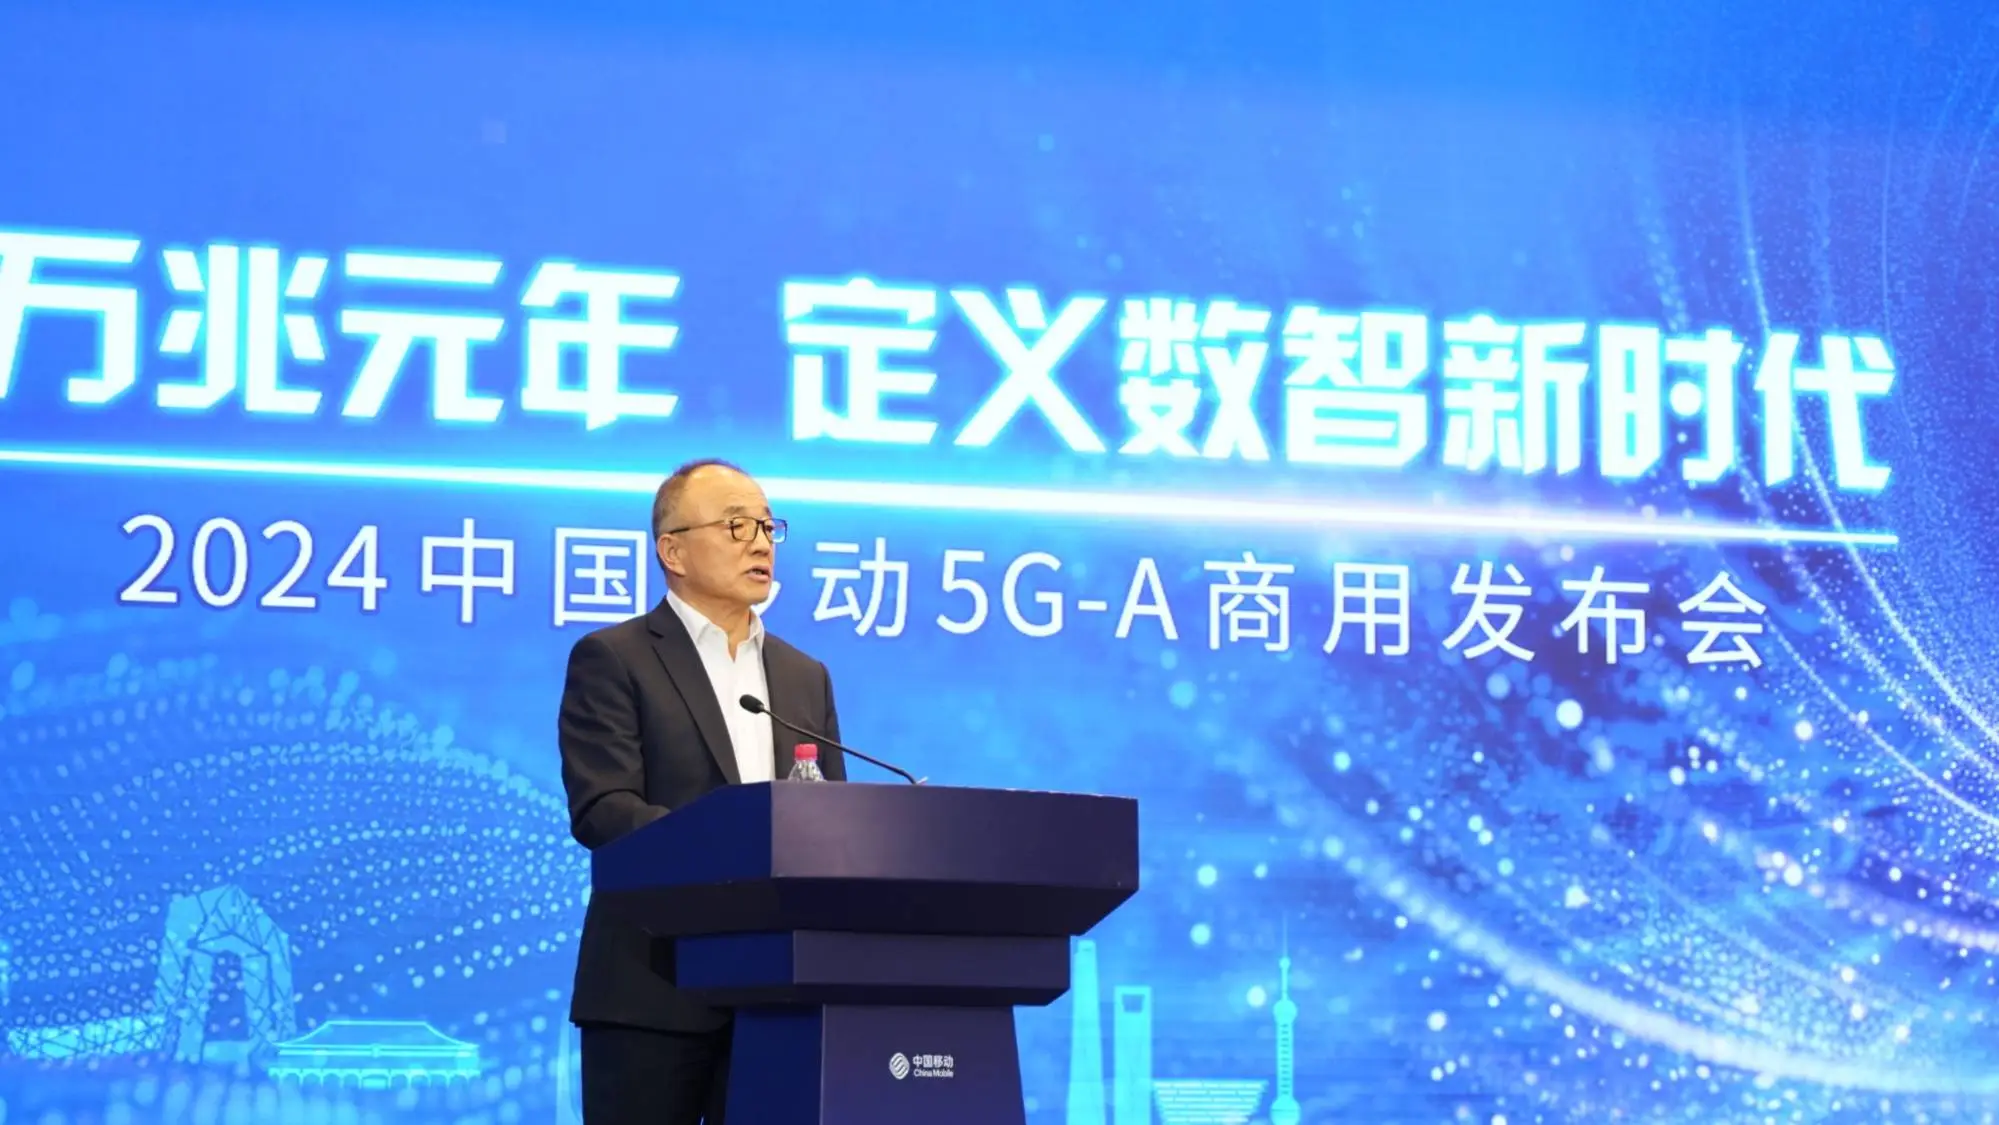 武汉 5G 革命：速度与效率的显著提升，改变市民生活方式  第6张